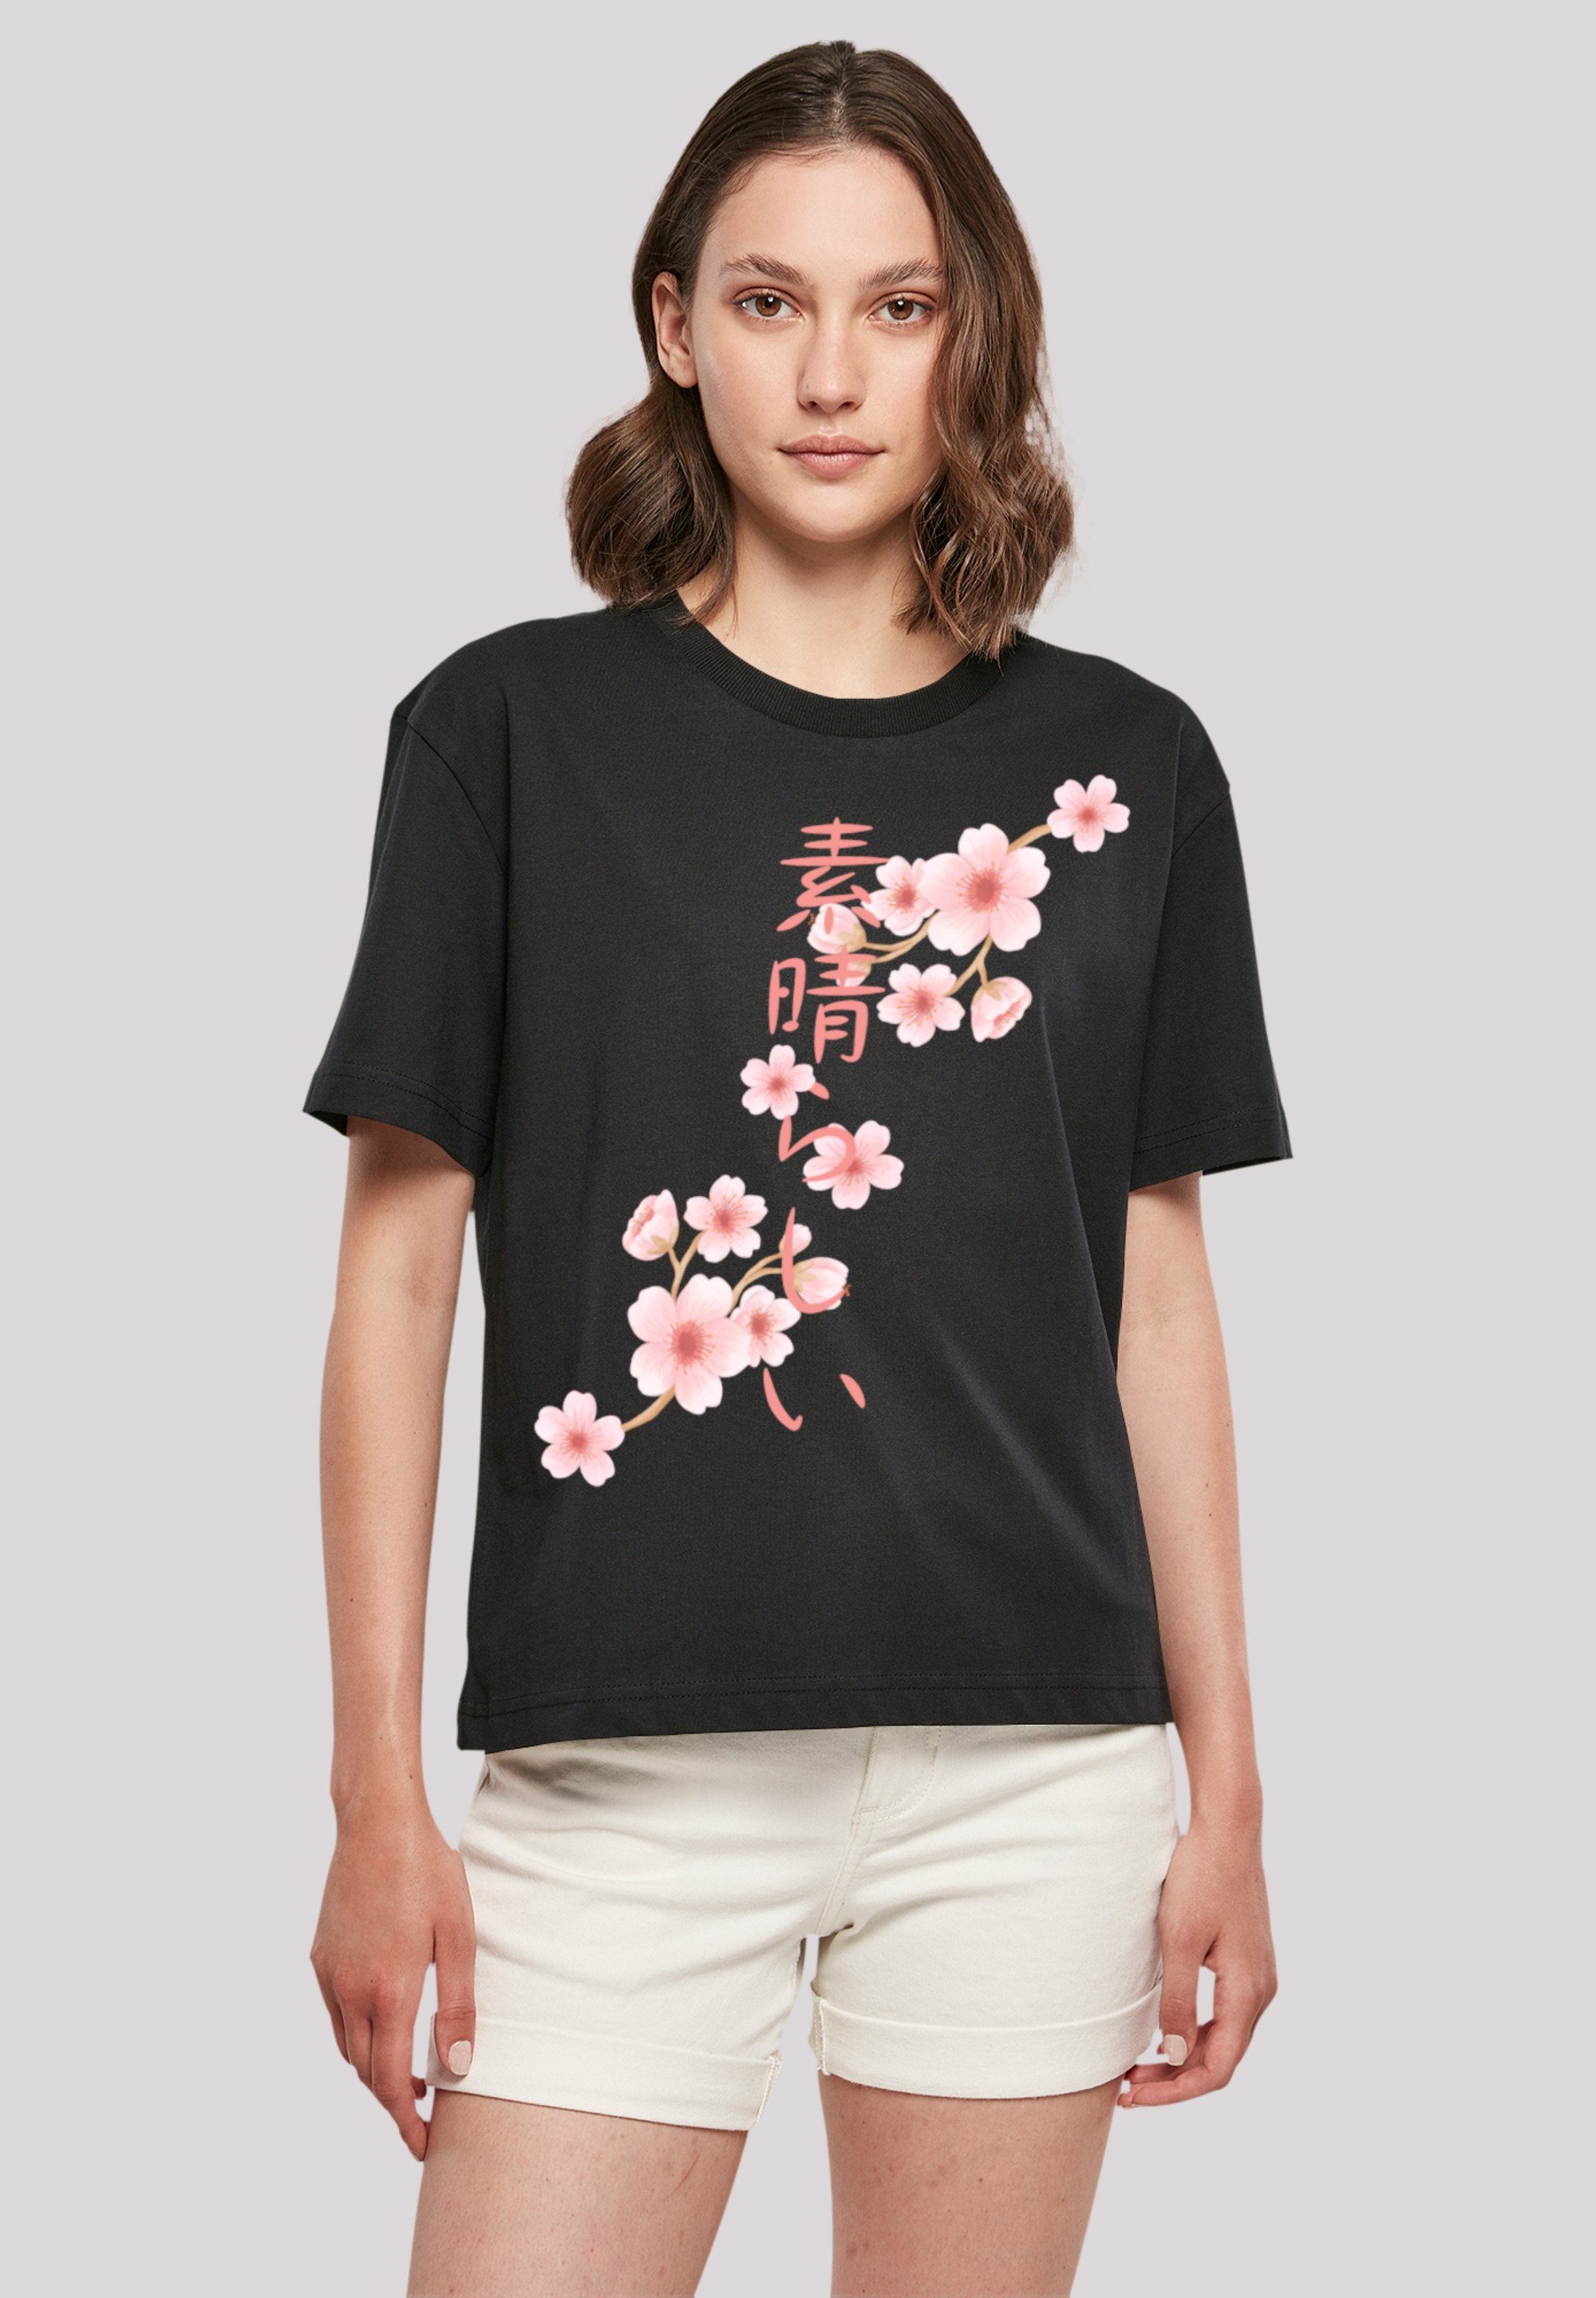 F4NT4STIC T-Shirt Kirschblüten Print, Gerippter Rundhalsausschnitt für  stylischen Look | T-Shirts